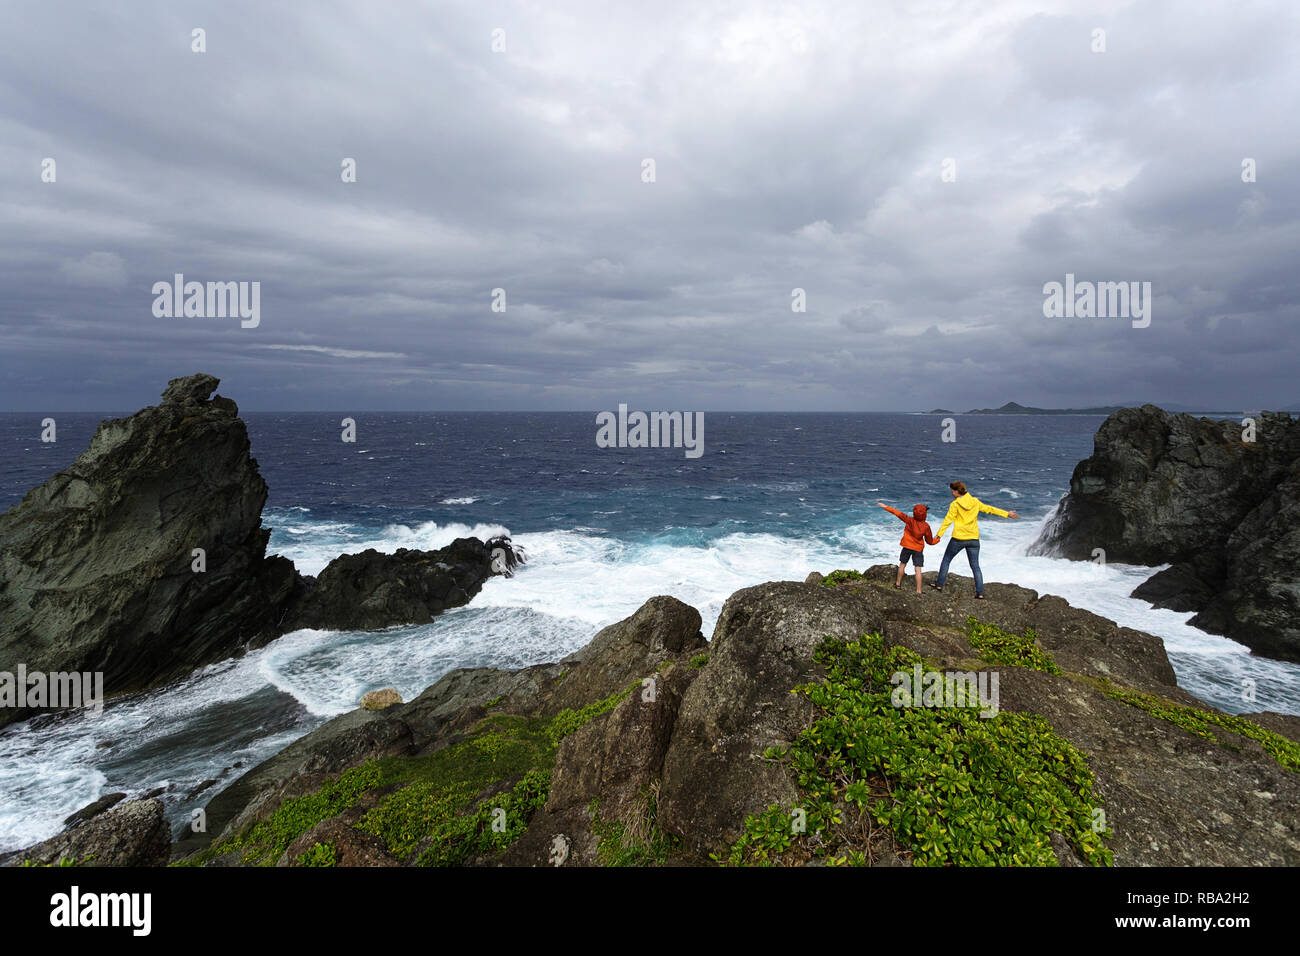 La mère et le fils à la recherche à l'état de la mer sur la côte sauvage à Uganzaki dans le phare de l'Île Ishigaki, Japon Okinawa Banque D'Images